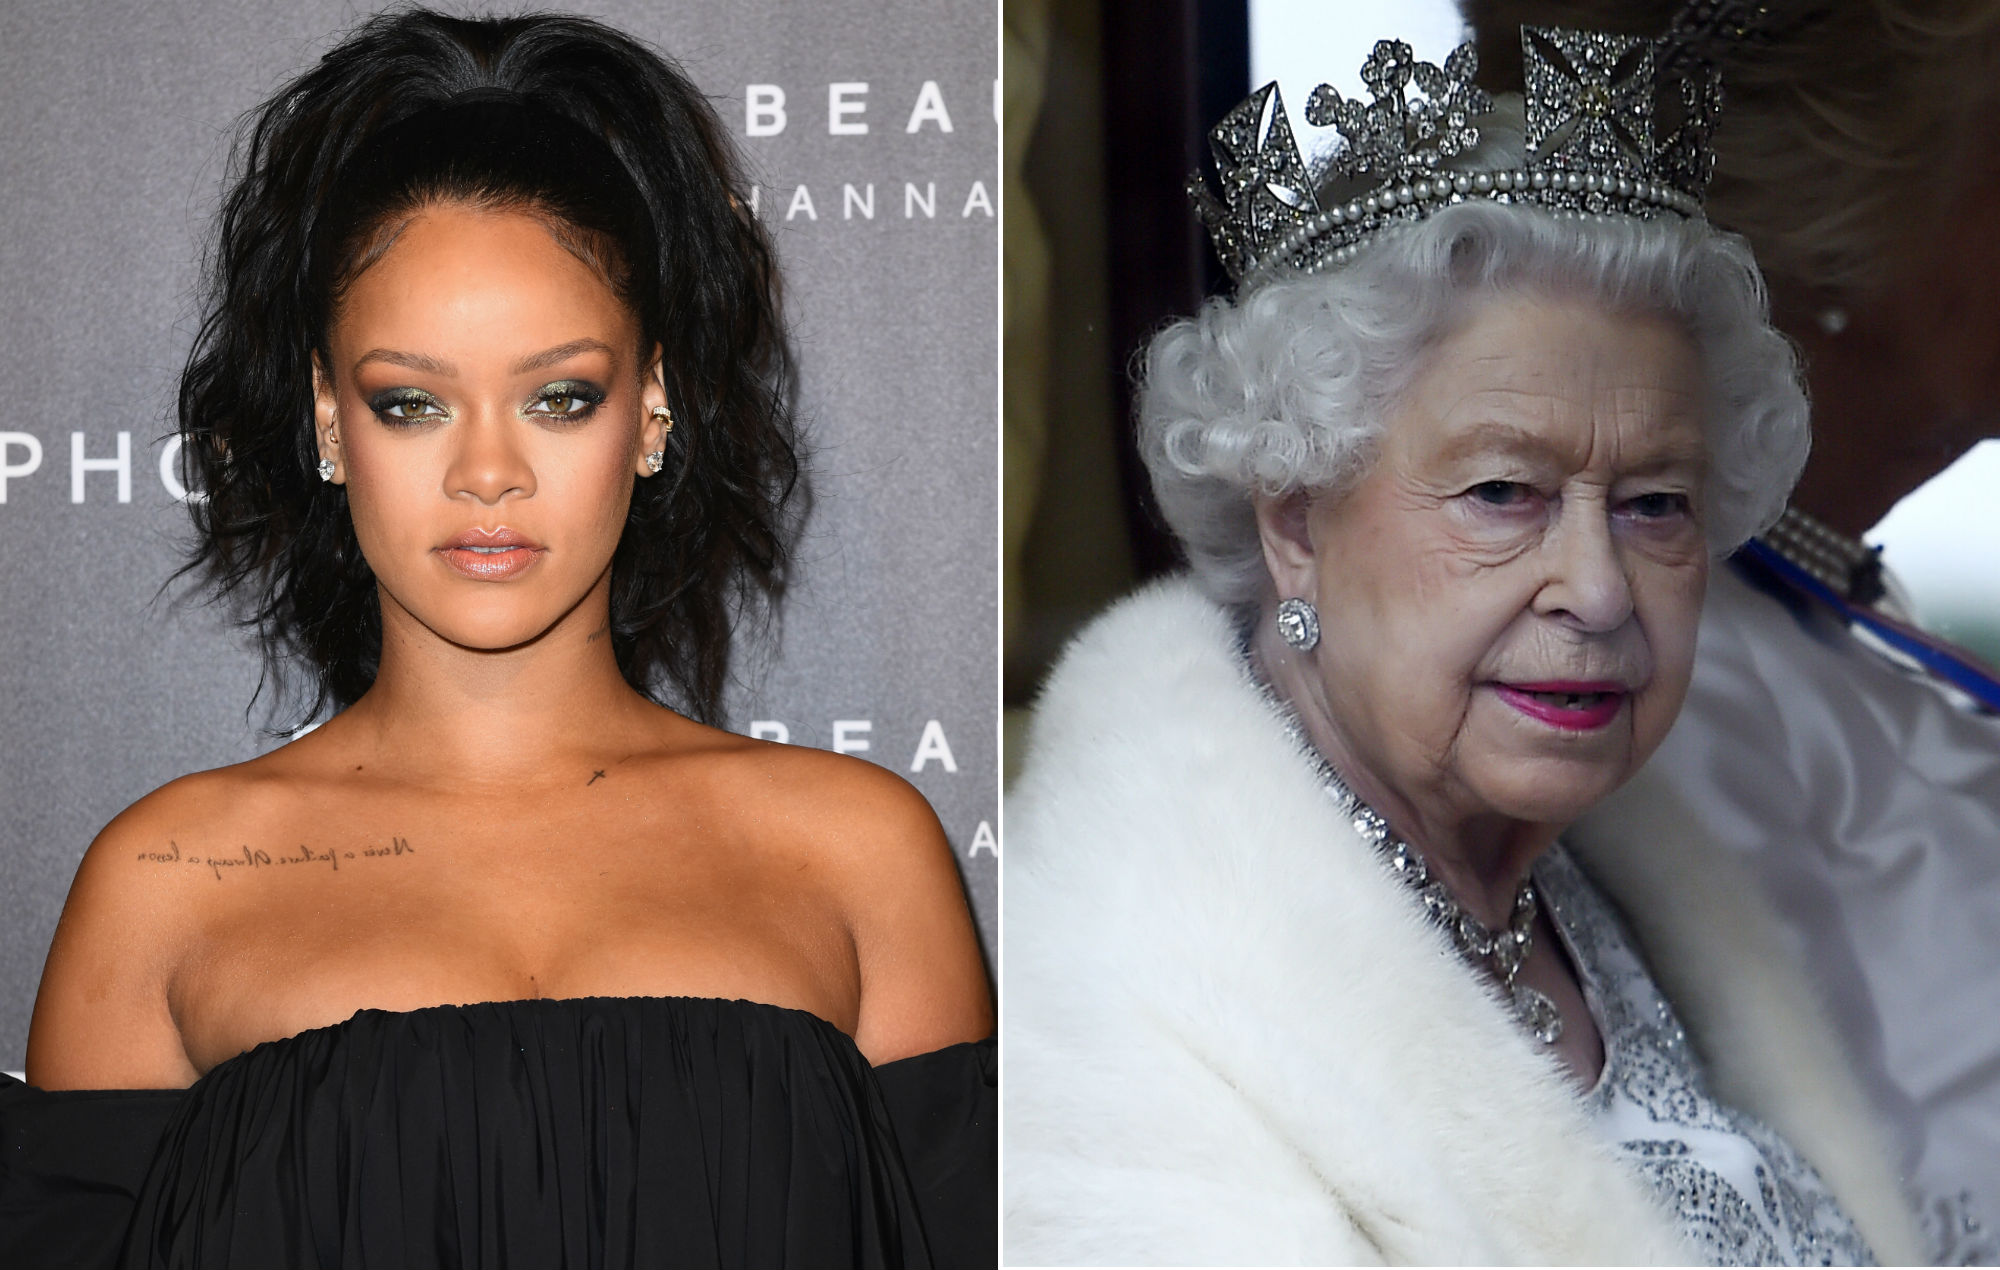 Los fans de Rihanna piden que la cantante sustituya a la Reina como jefe de estado de Barbados